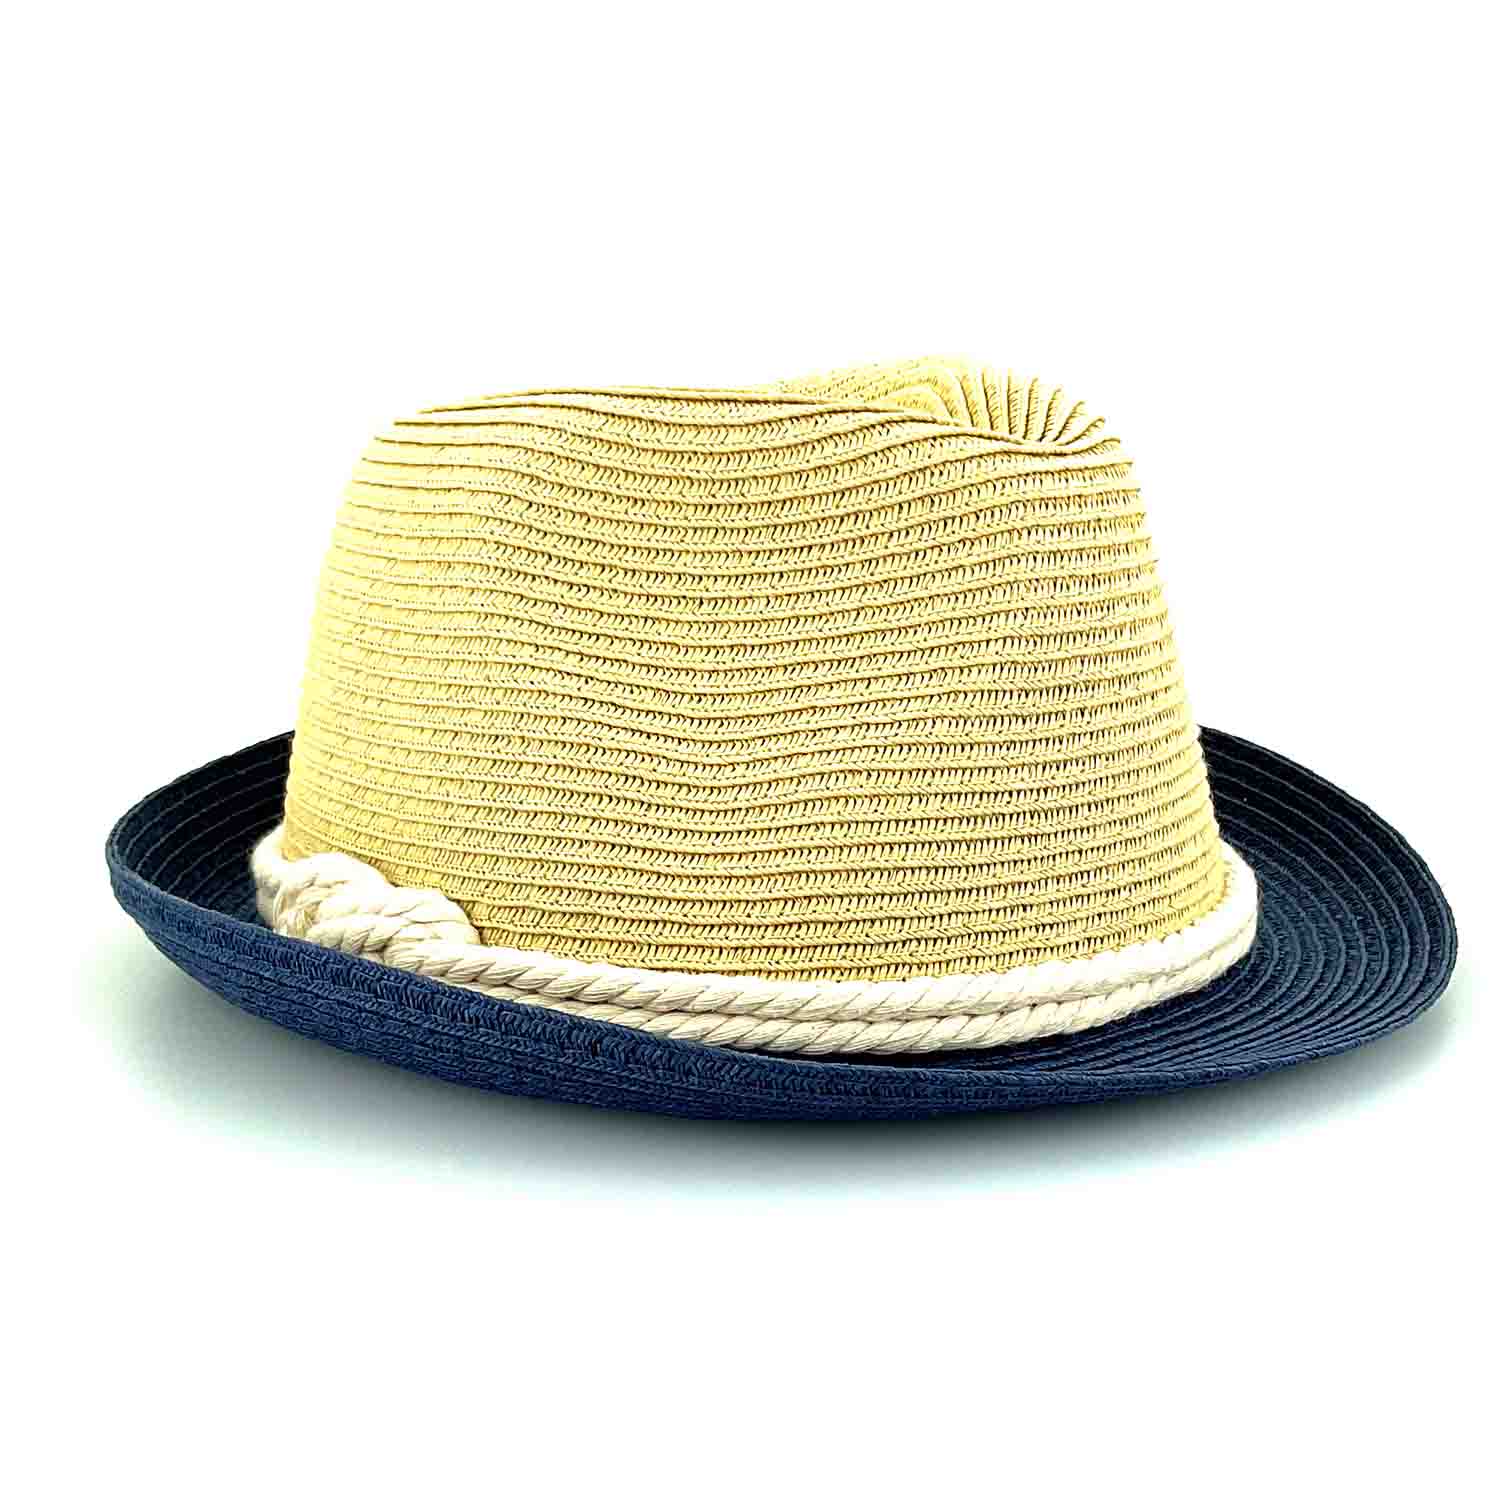 Petite Size Straw Fedora Hat with Rope Tie - Sunny Dayz™